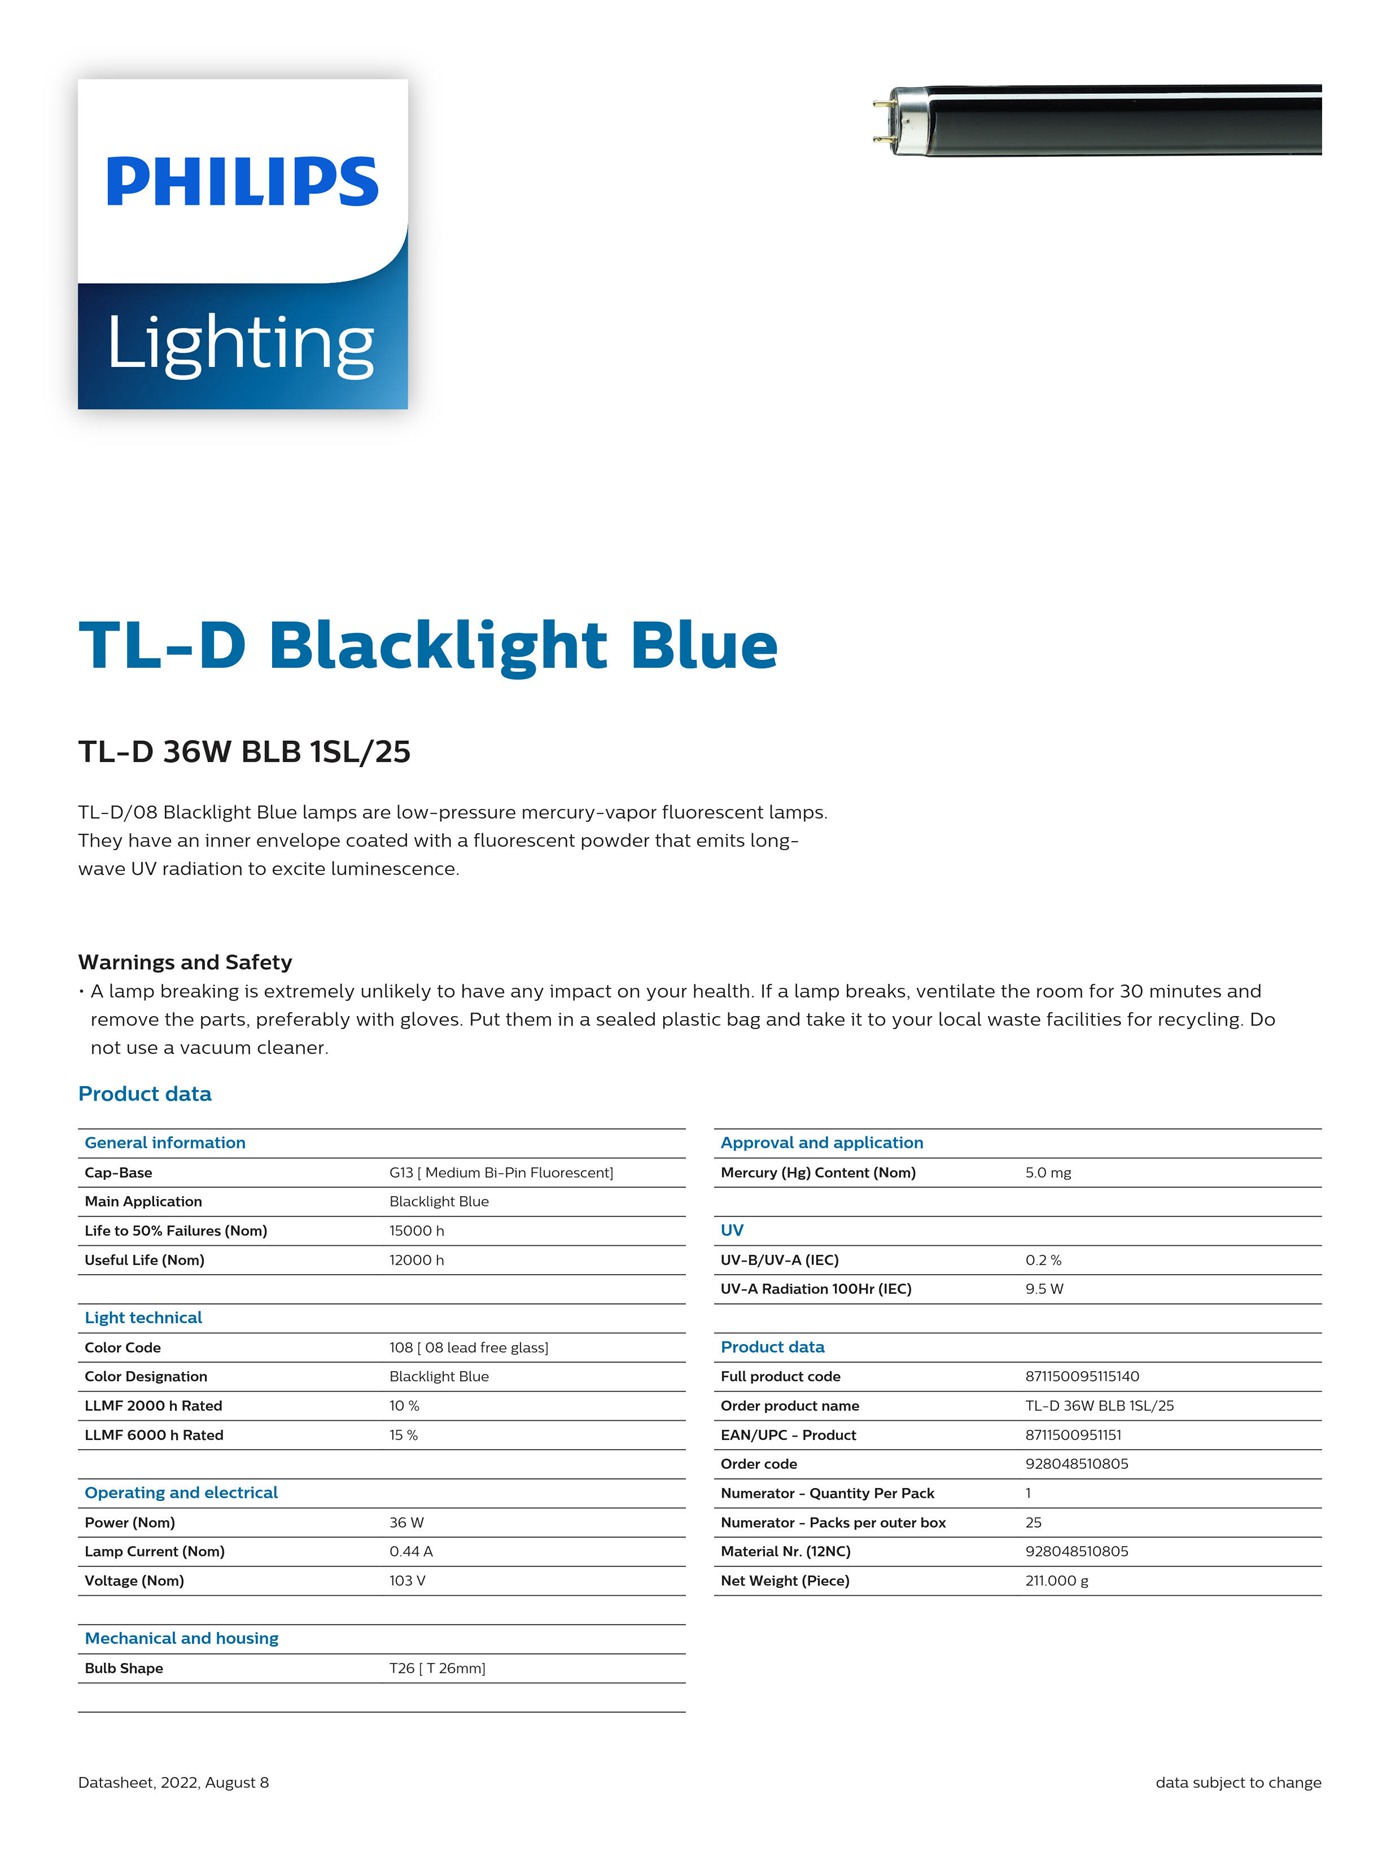 PHILIPS Blacklight Blue TL-D 36W BLB 1SL/25 928048510805